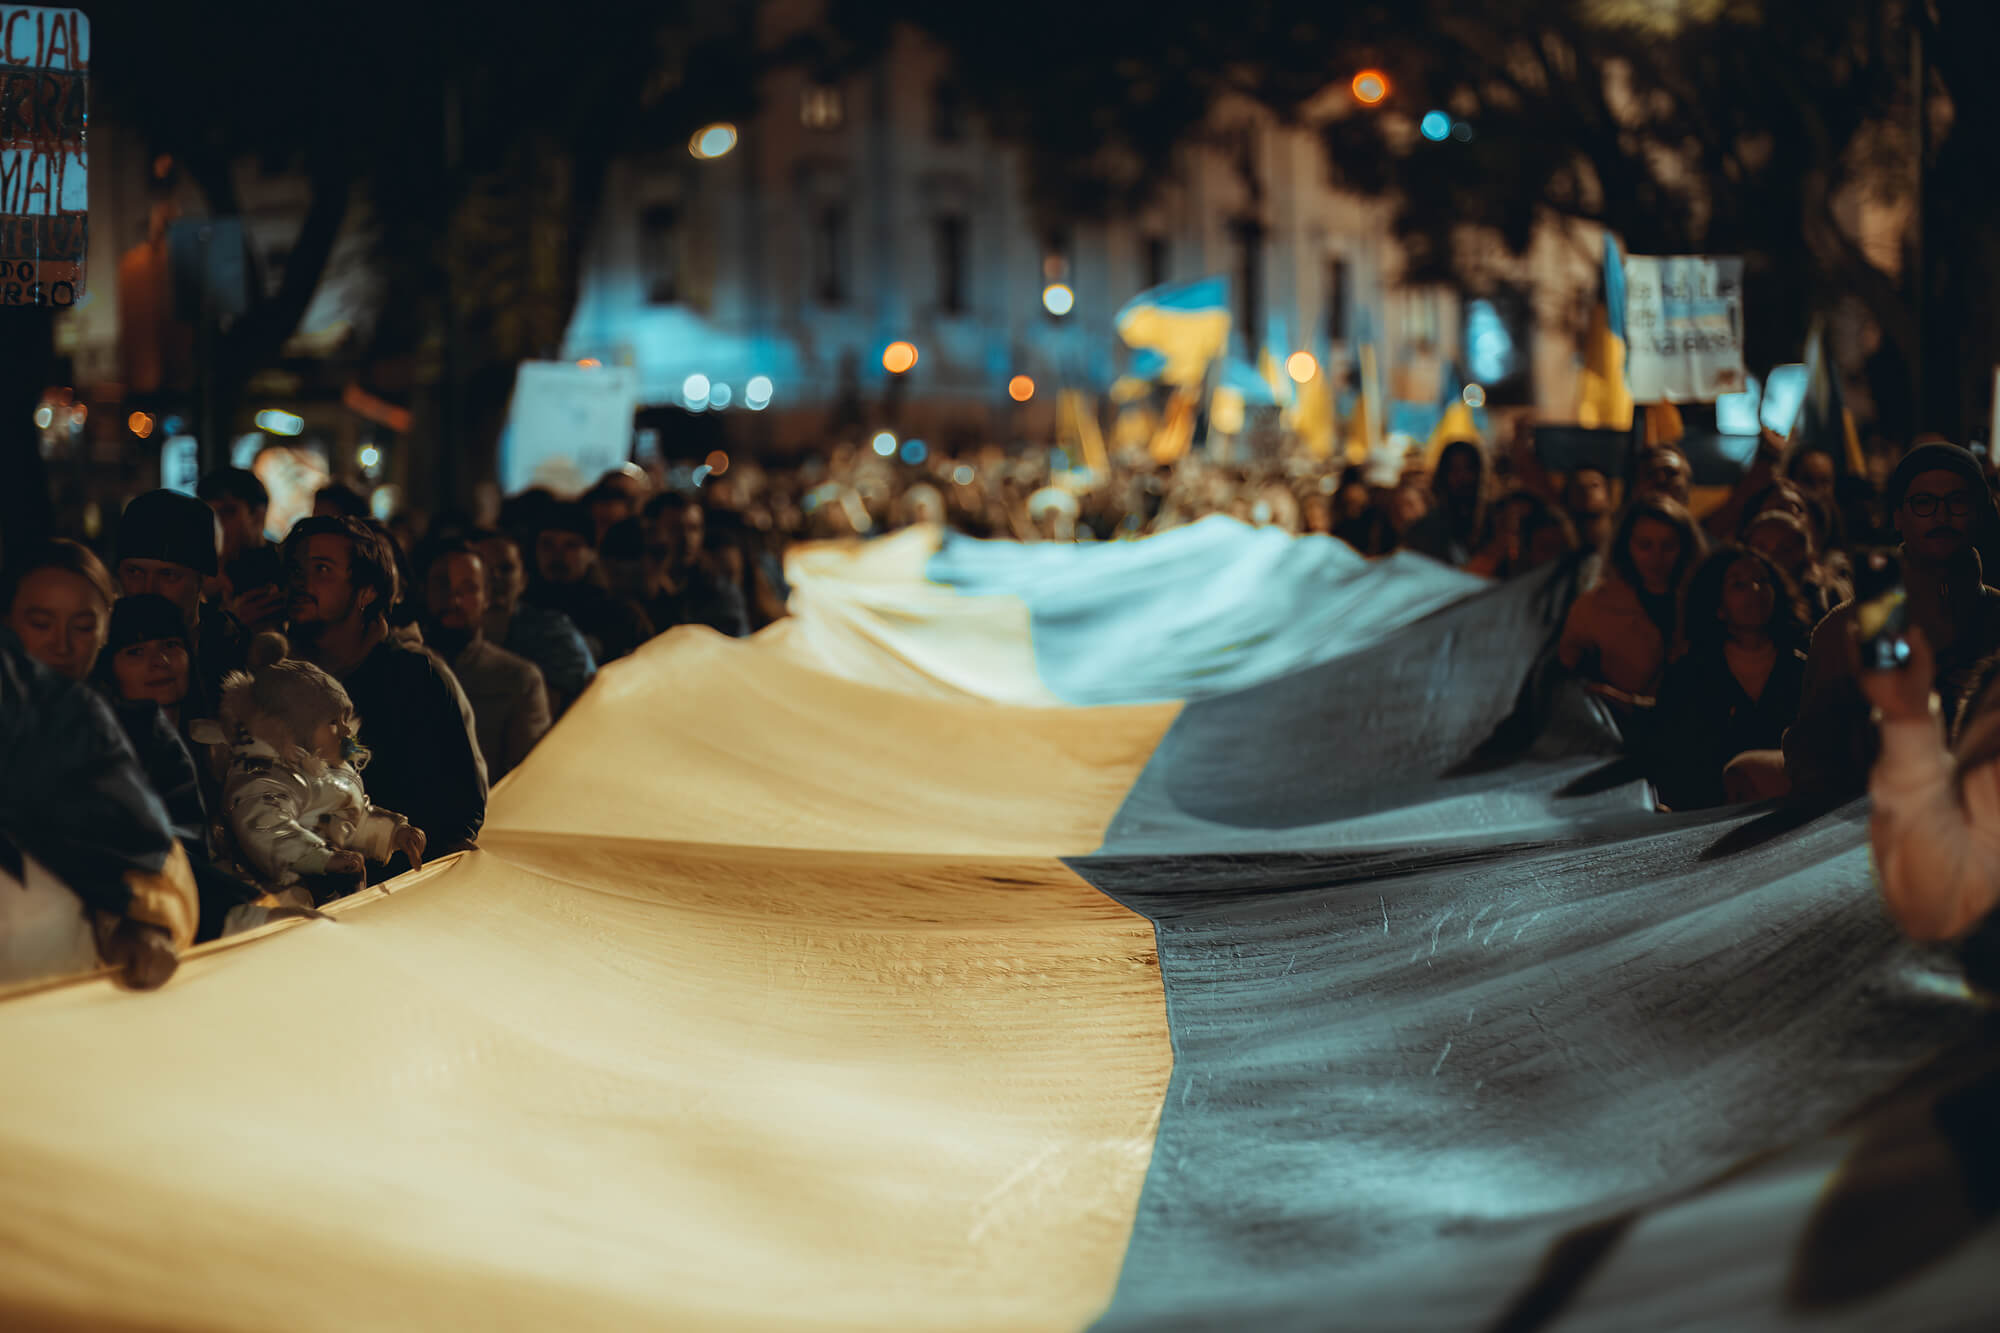 Democracy needs Ukraine to win